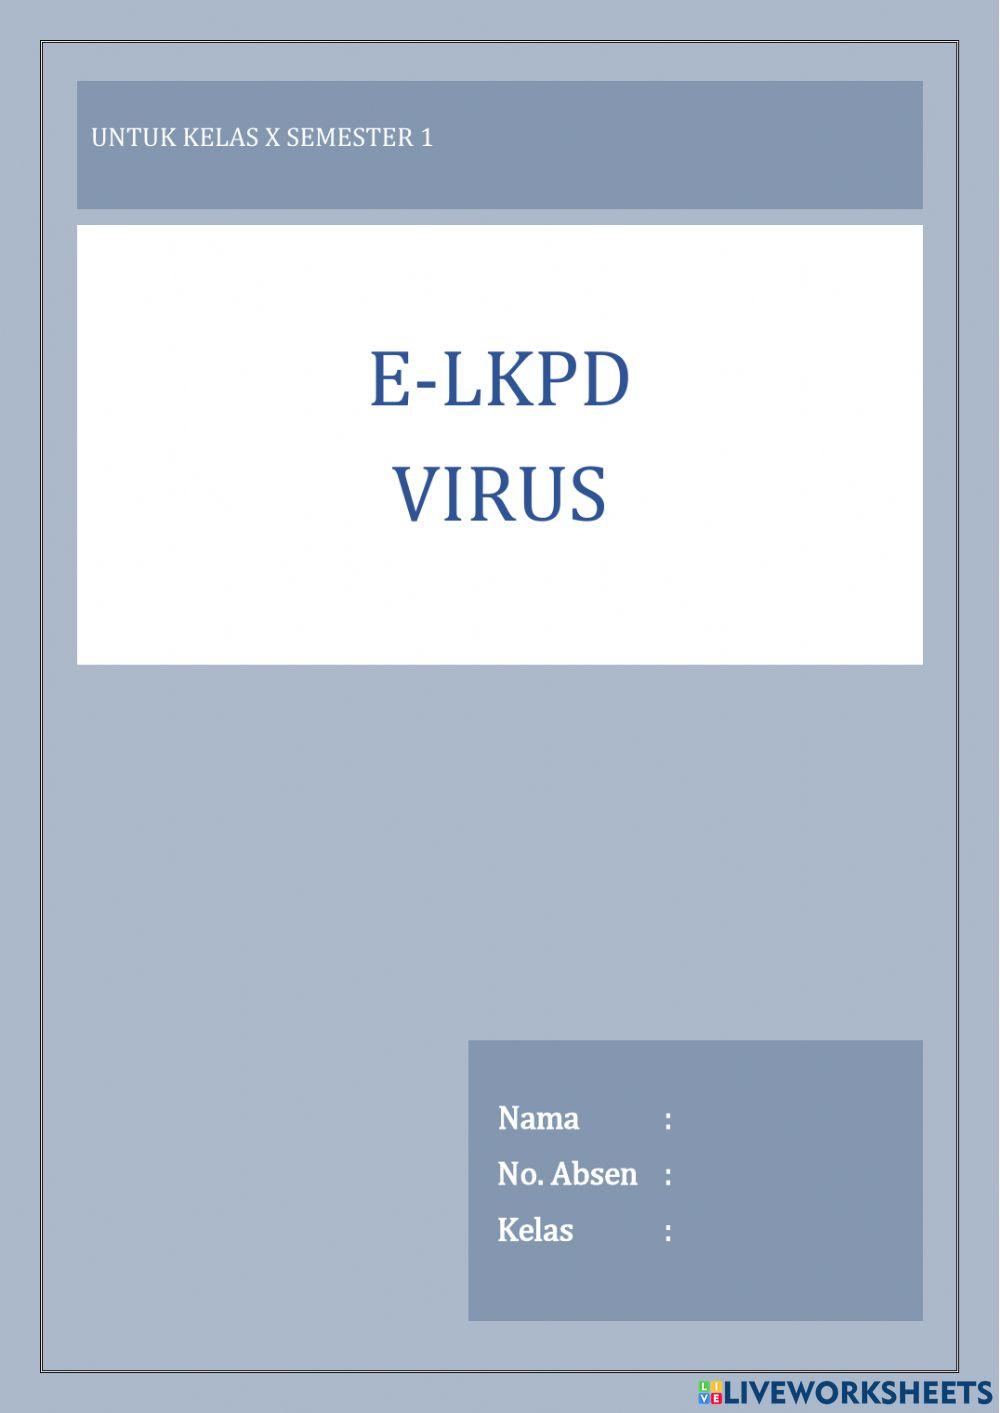 E-LKPD Virus